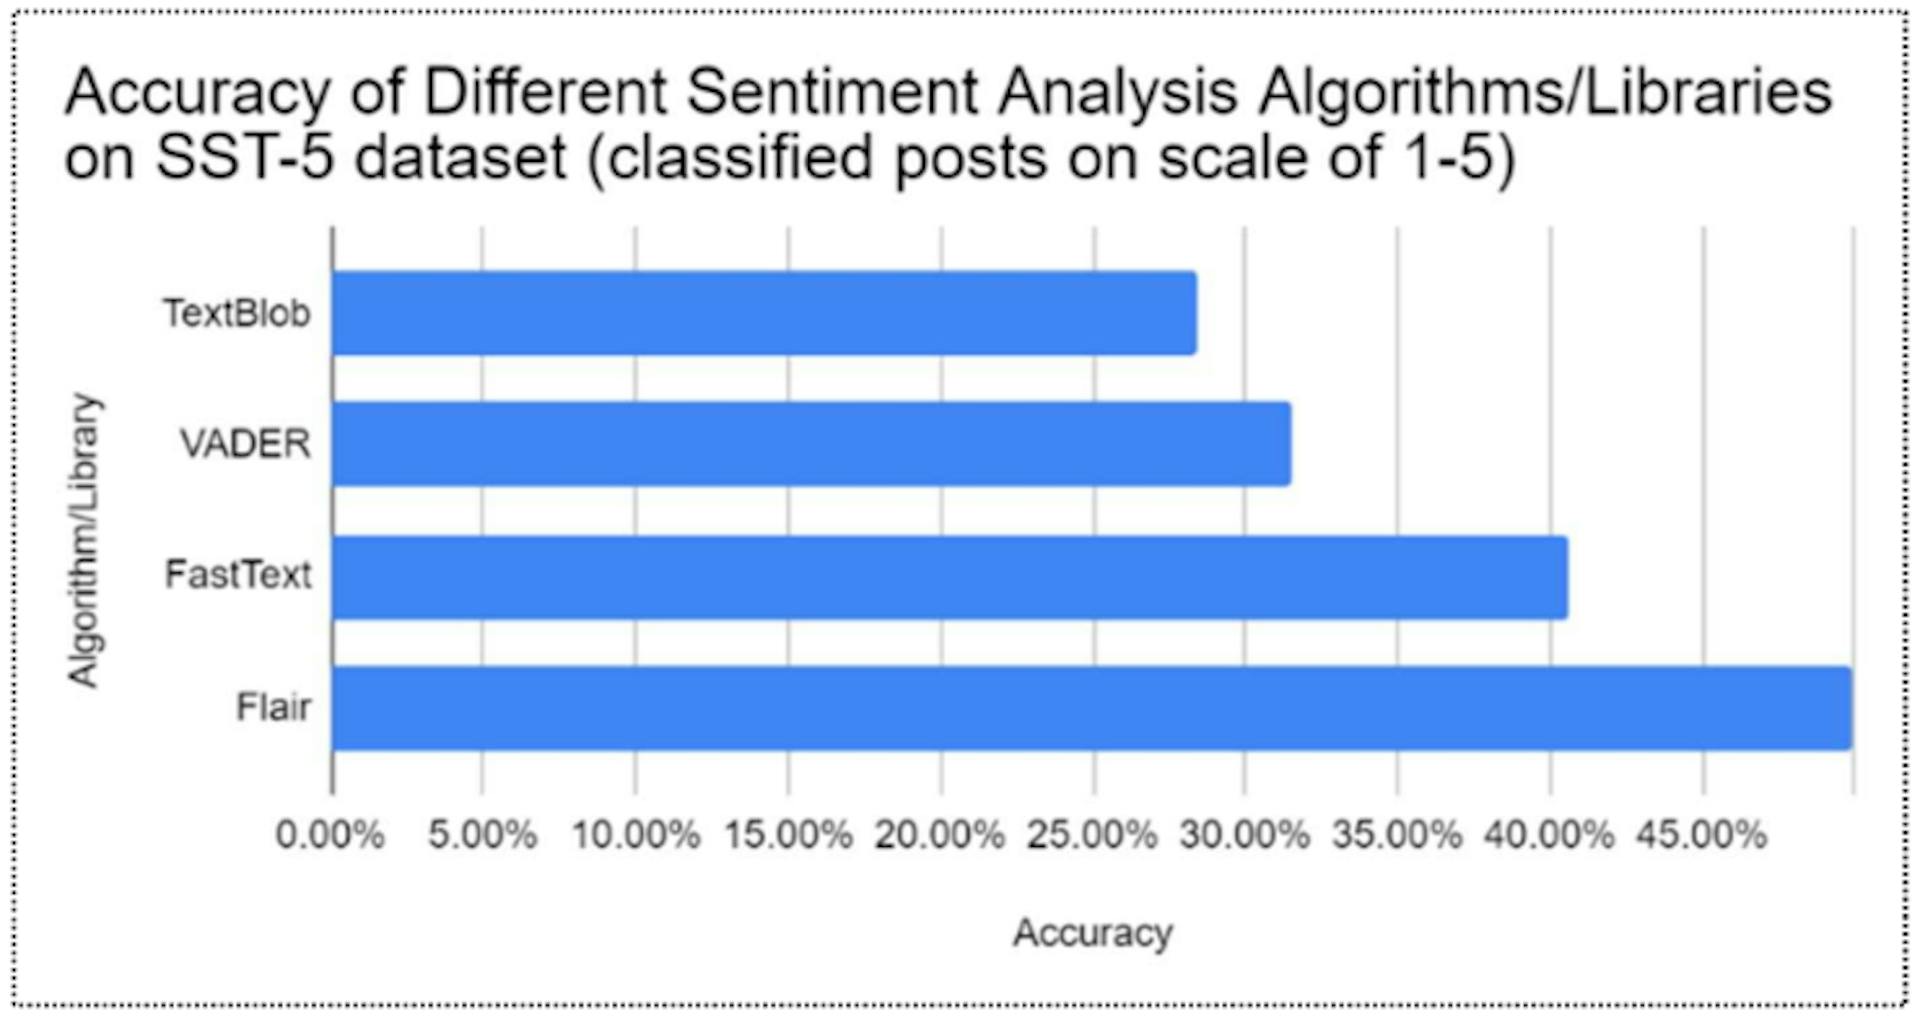 그림 4: SST-5 데이터베이스의 다양한 감정 분석 알고리즘의 정확도 비교